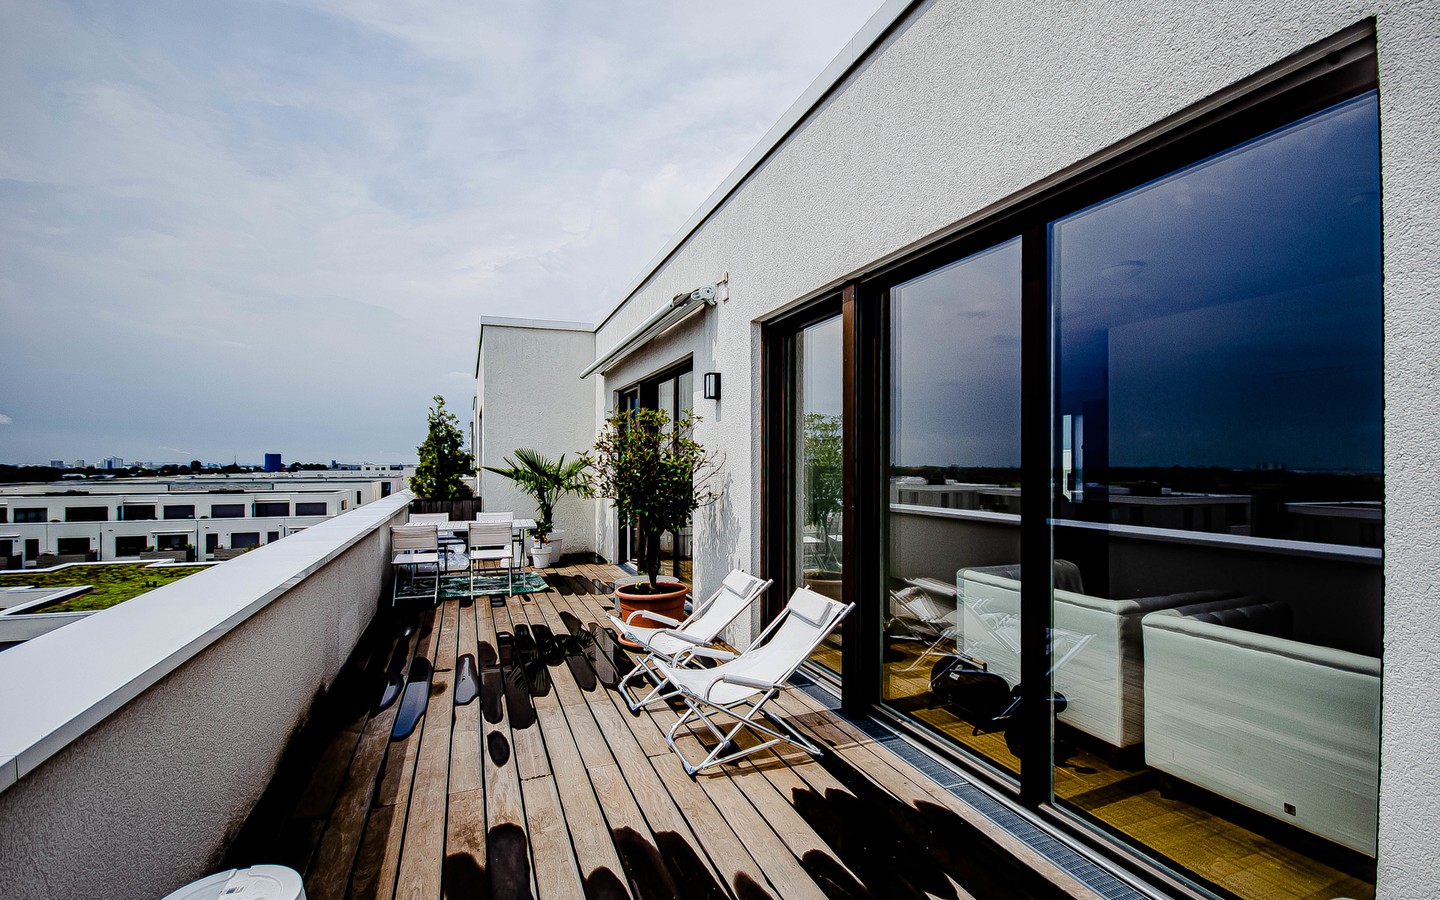 Terrasse - Ein Hauch von Luxus:
Imposante Penthouse Wohnung mit vielen Extras